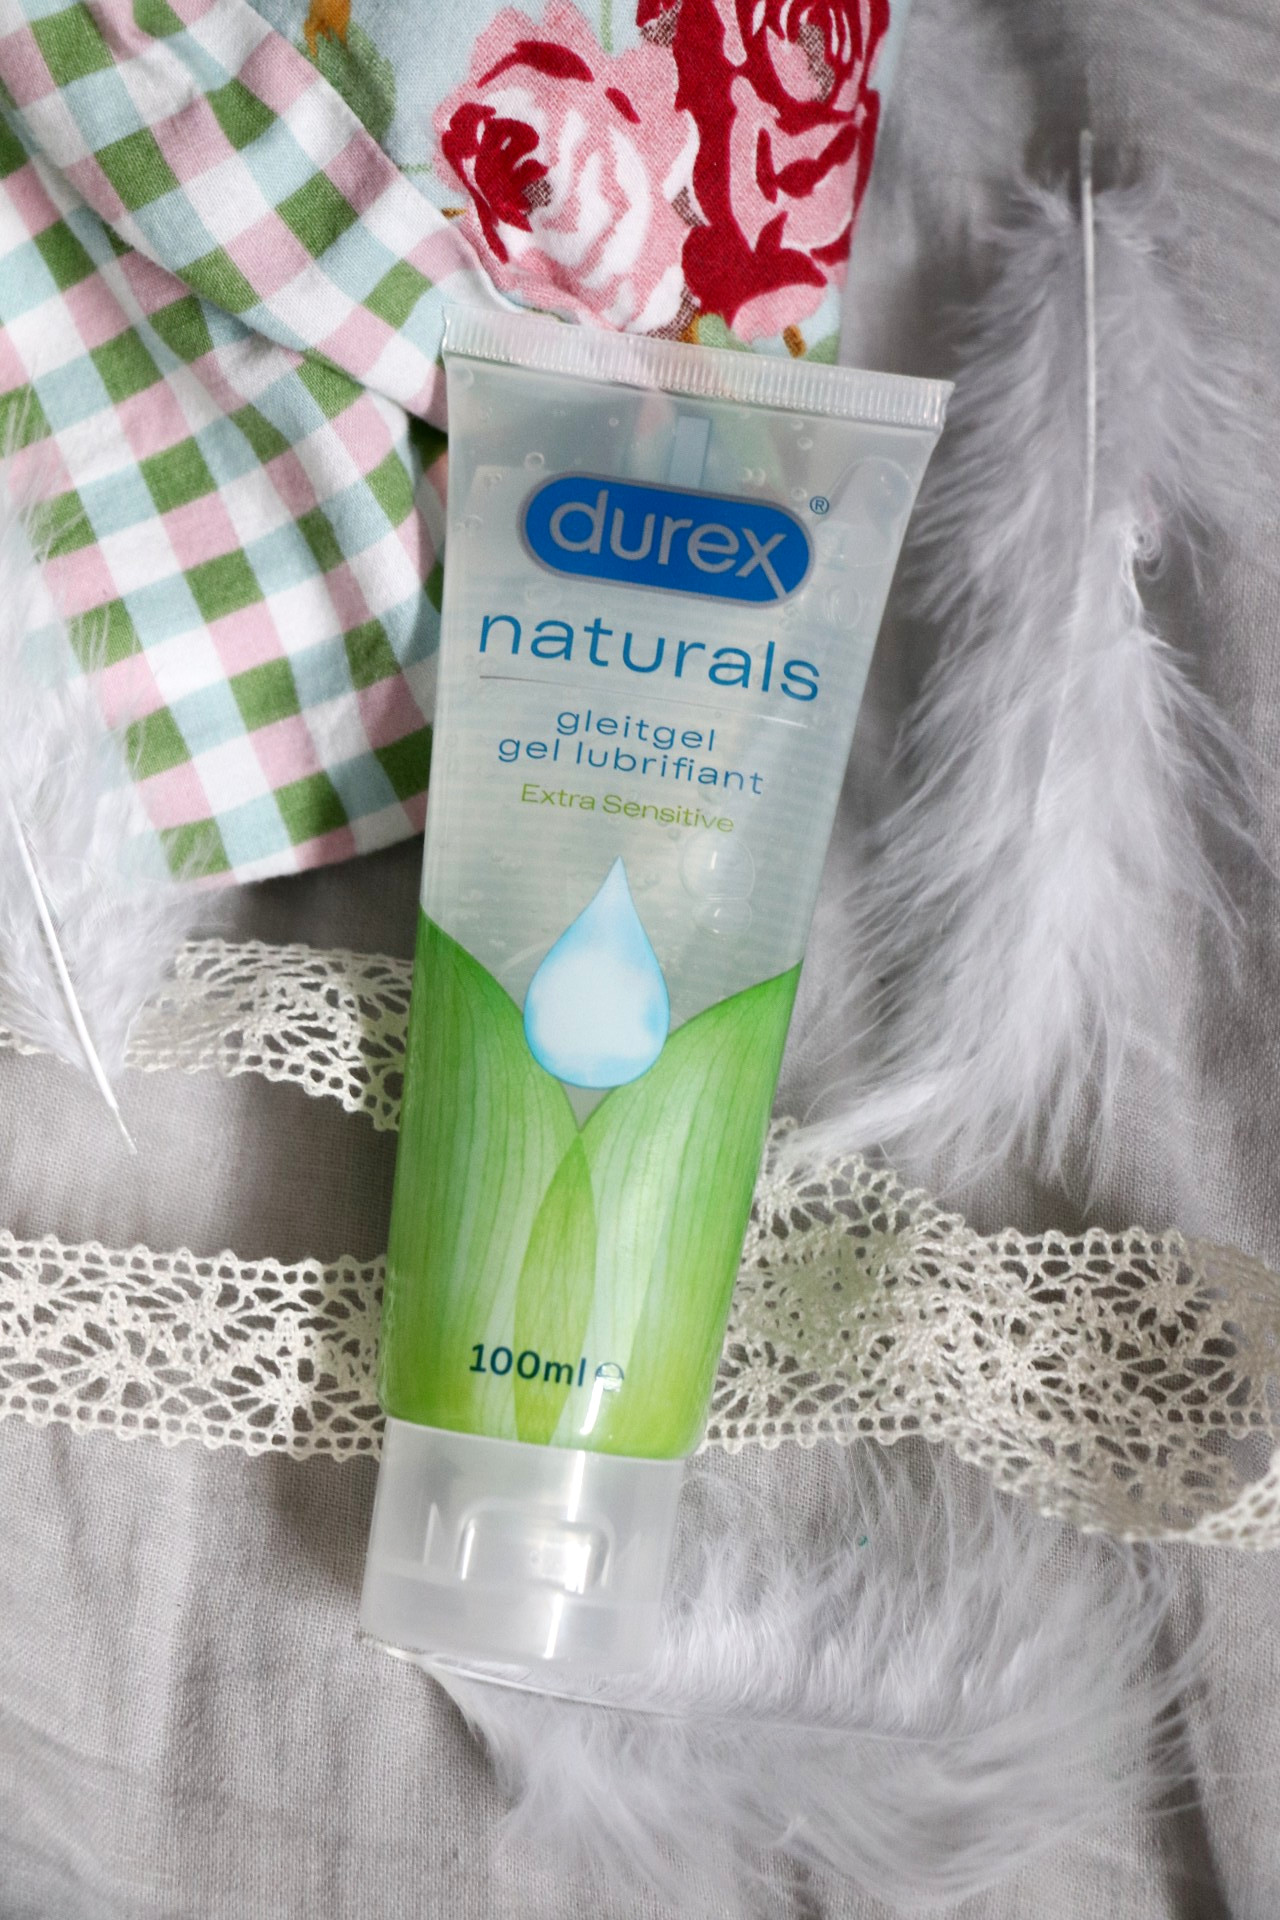 Durex Naturals Extra Sensitive Gleitgel Erfahrungen